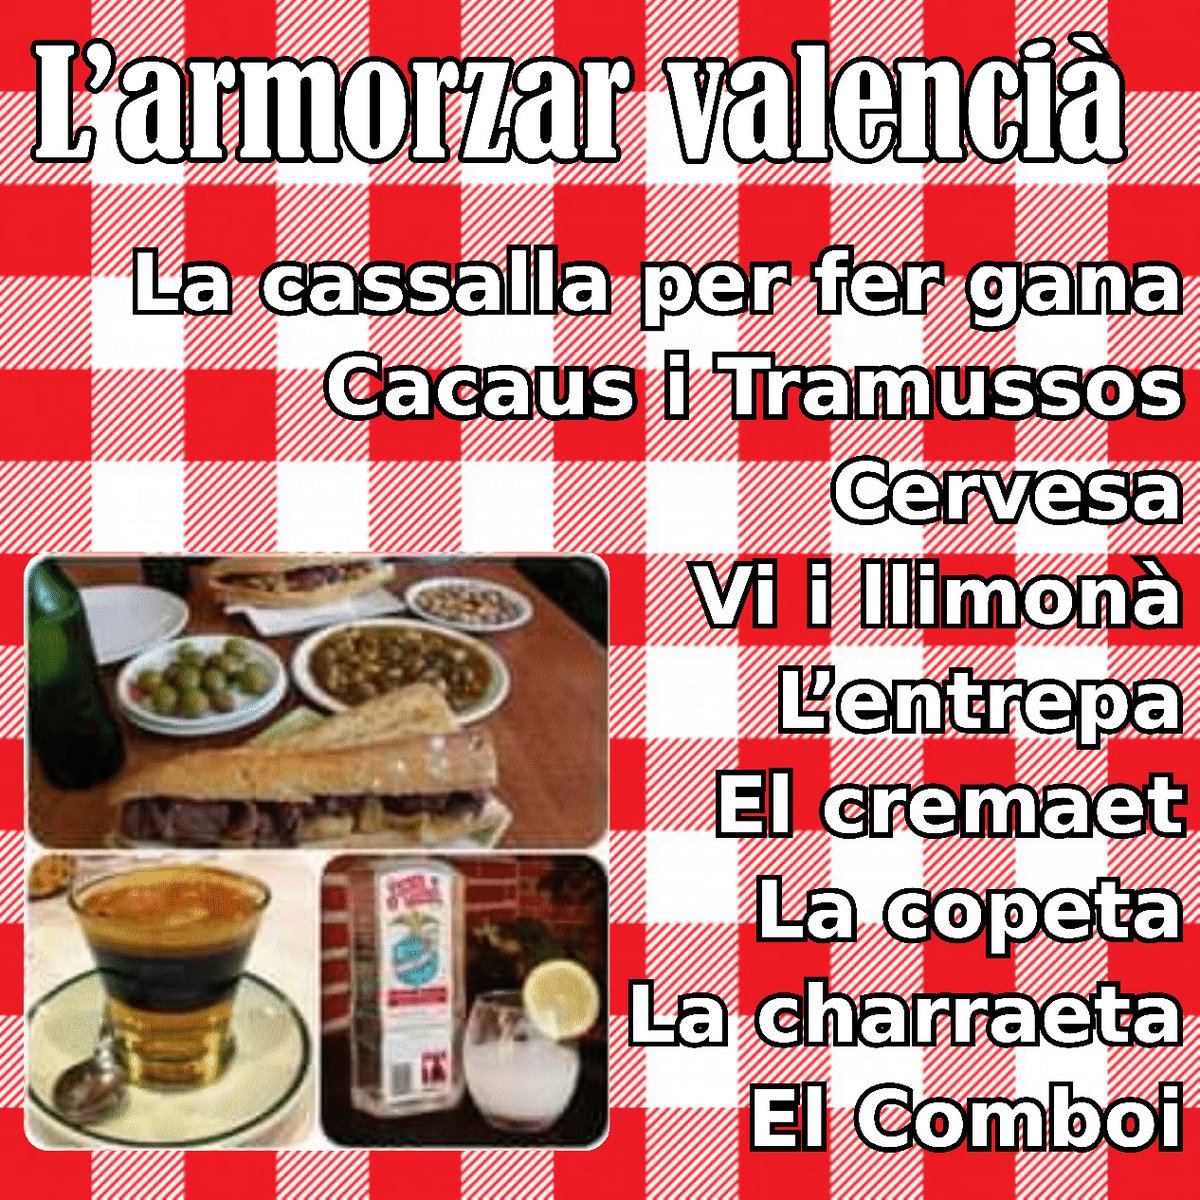 @FloresJuberias @Behind_musgo Almorzaret, no esmorzaret que es una catalanada.